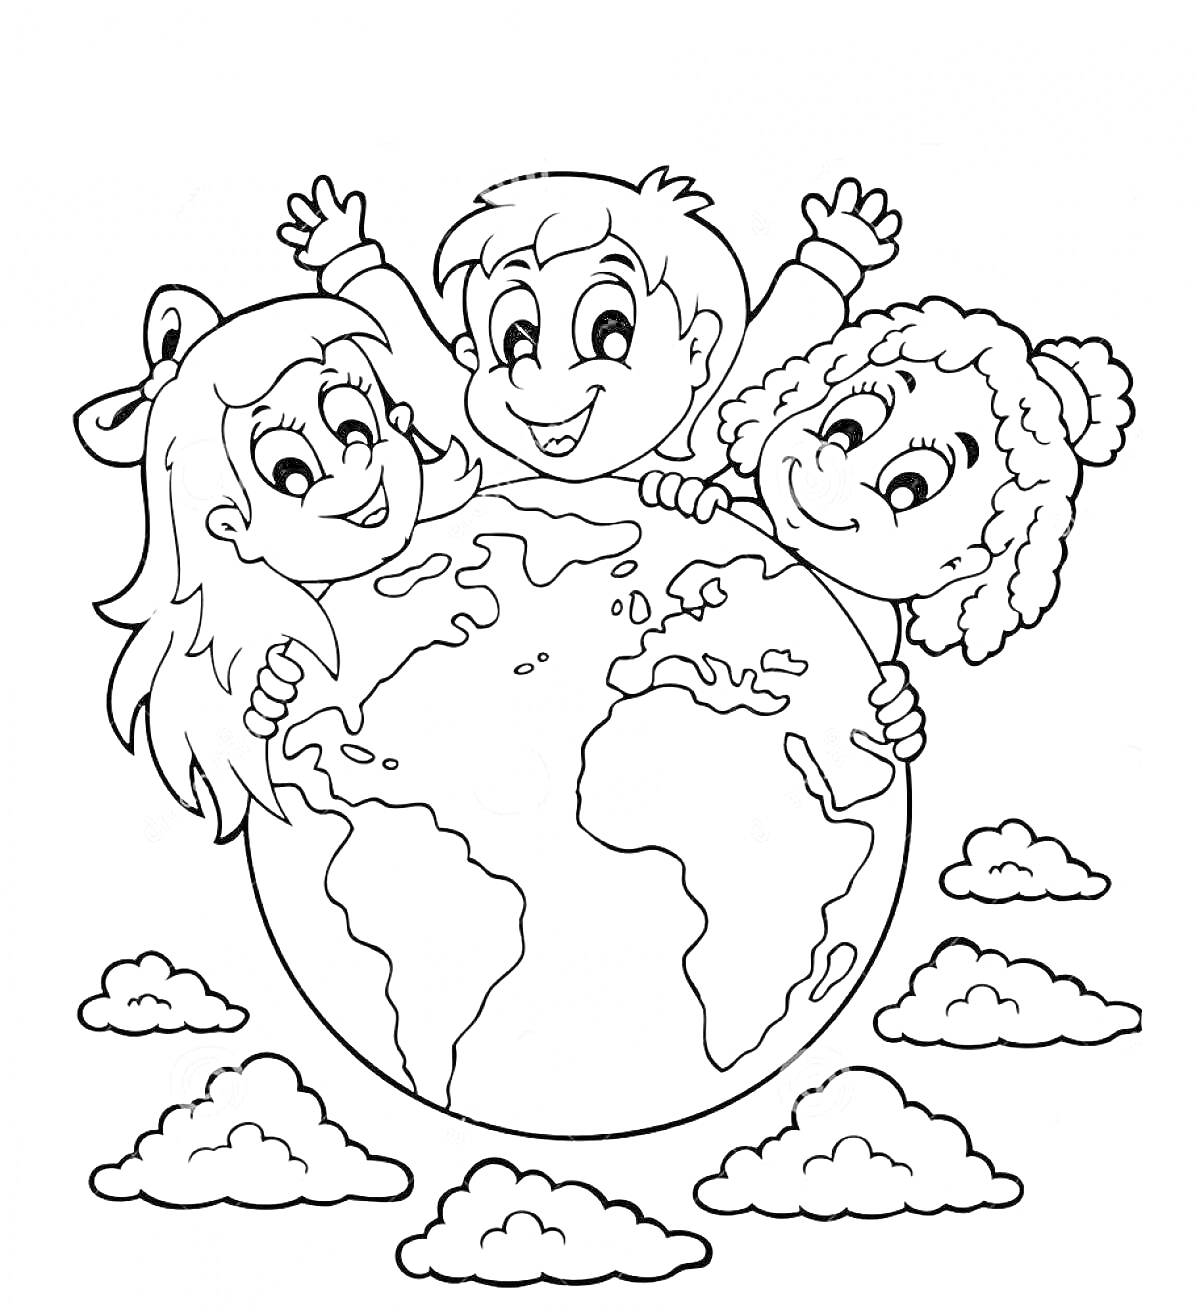 Раскраска Дети с глобусом и облаками